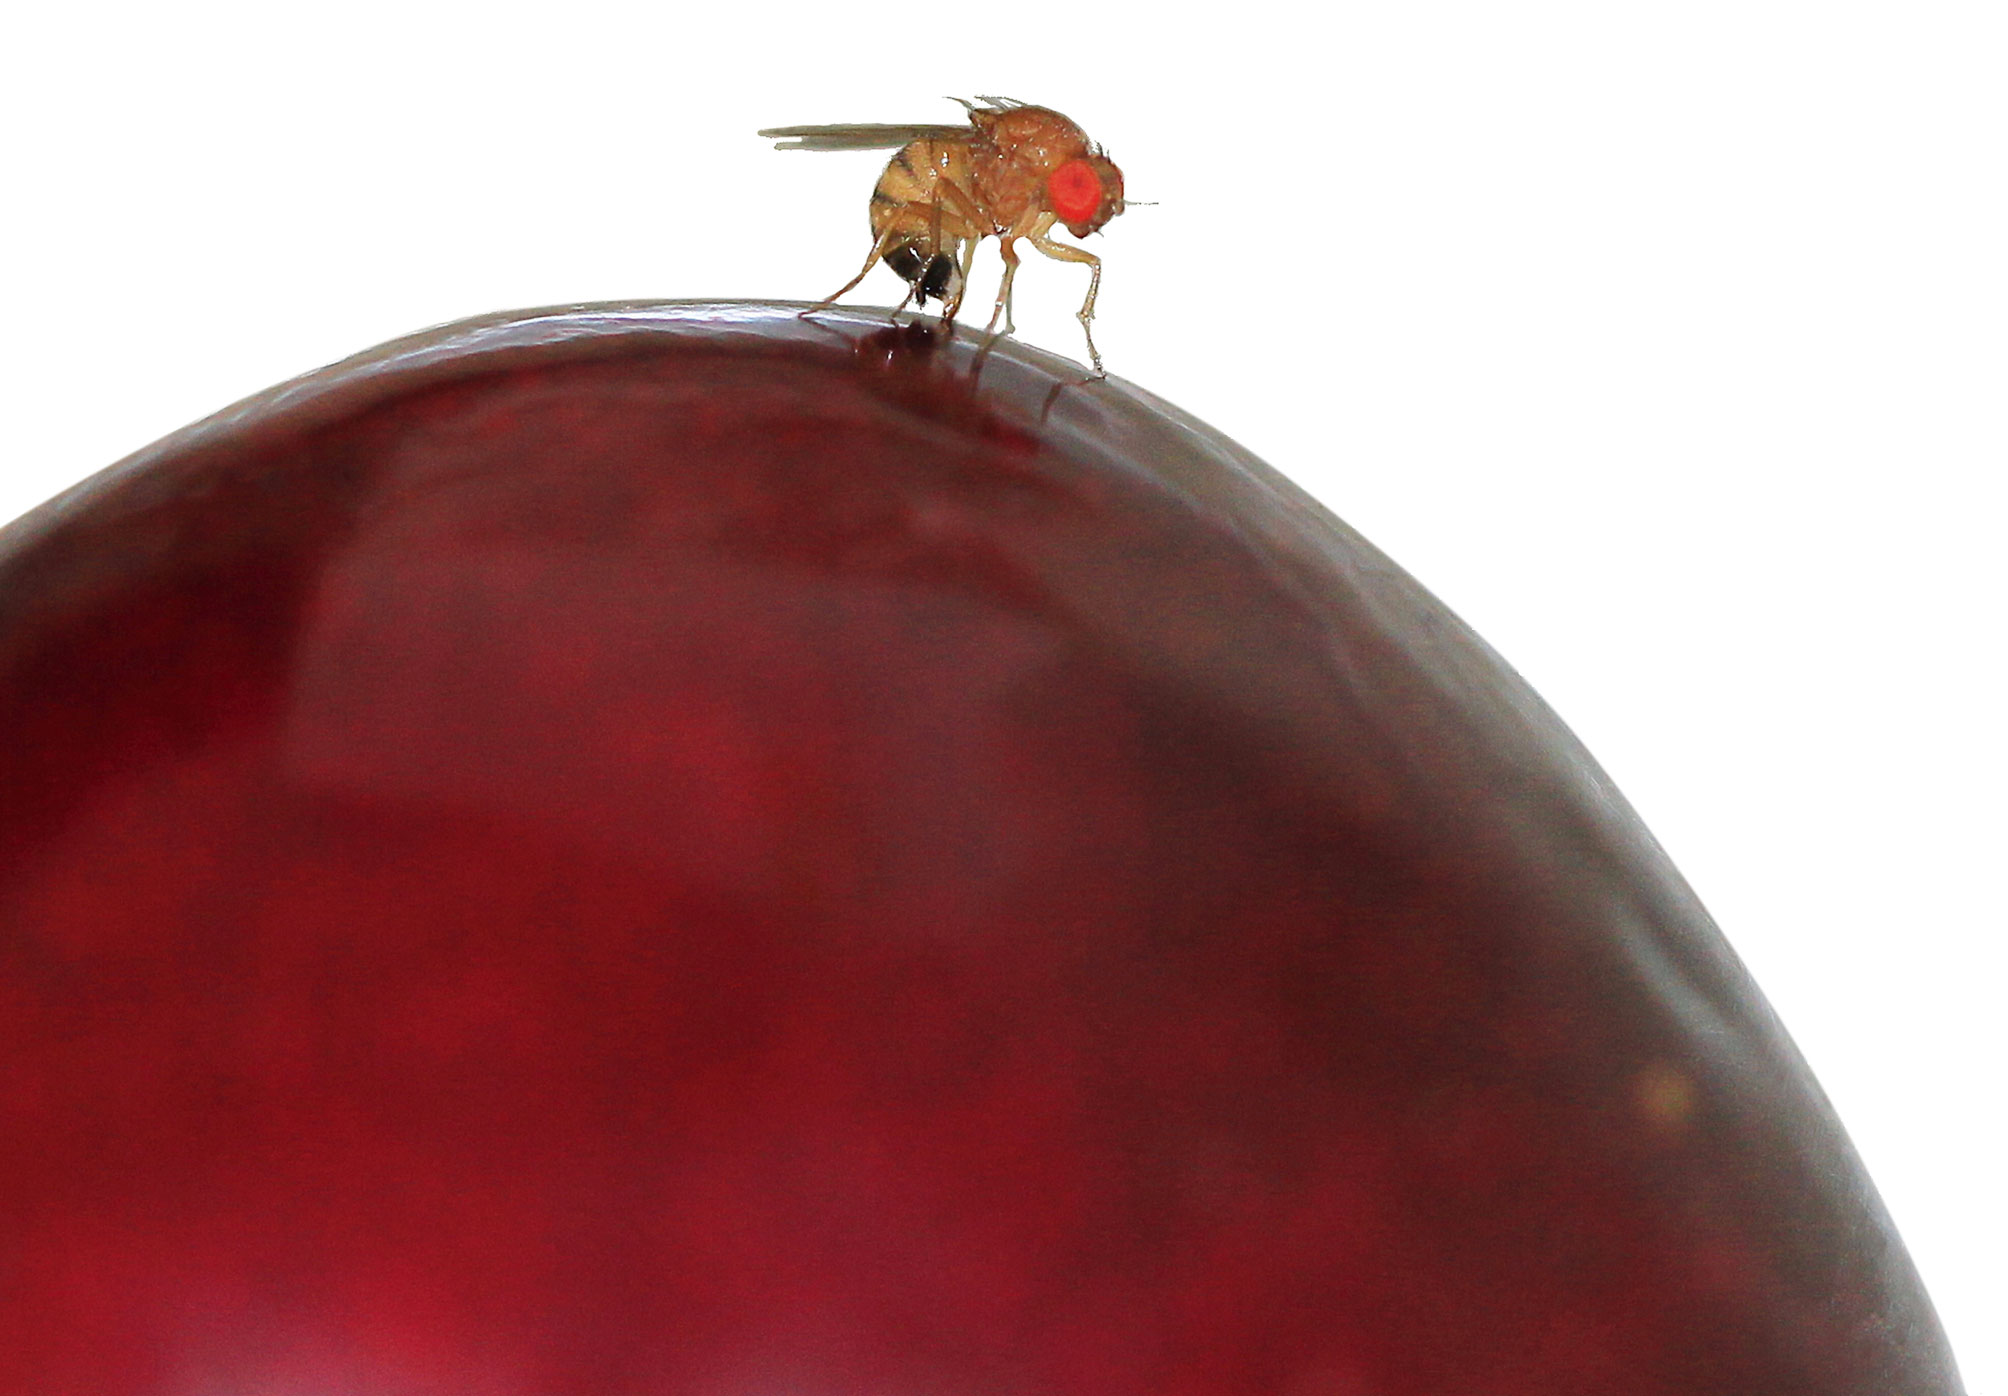 Drosophile du cerisier: stratégies, infestations et dégâts sur fruits à noyau. Résultats du sondage national en ligne de 2015